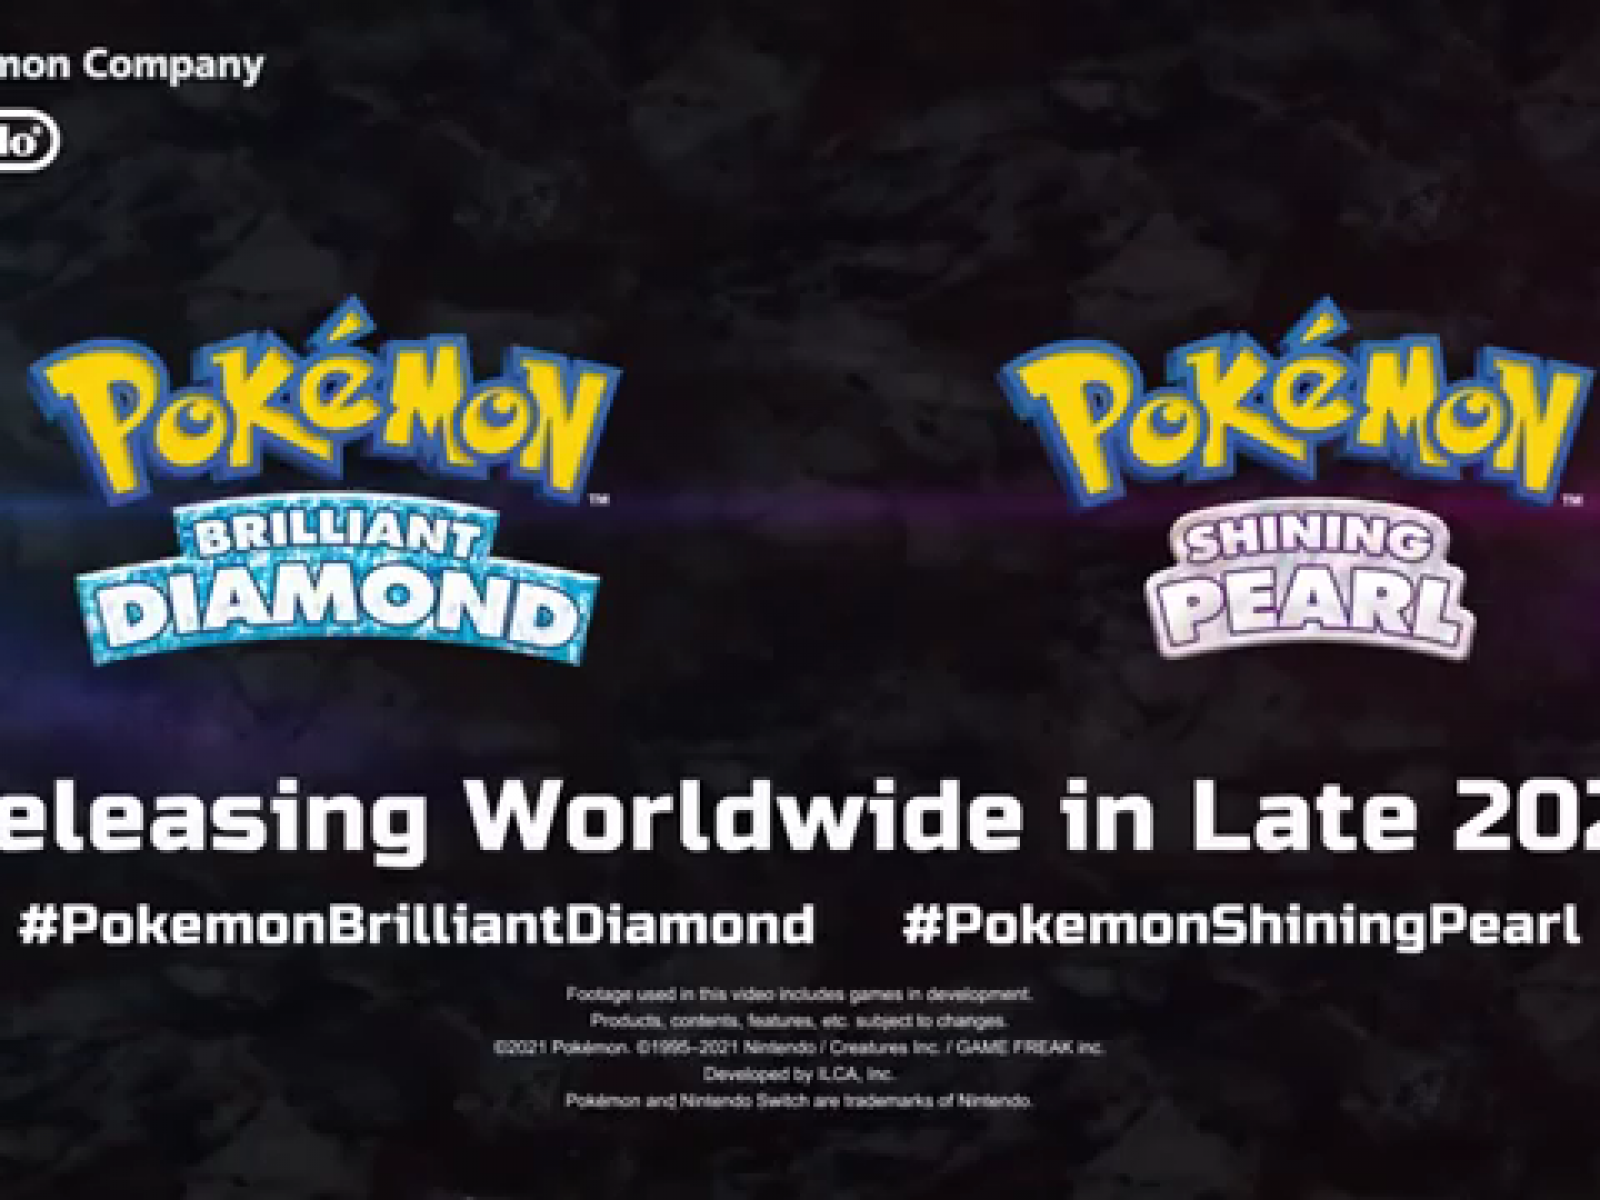 Pokemon Brilliant Diamond & Shining Pearl trailer reveals new